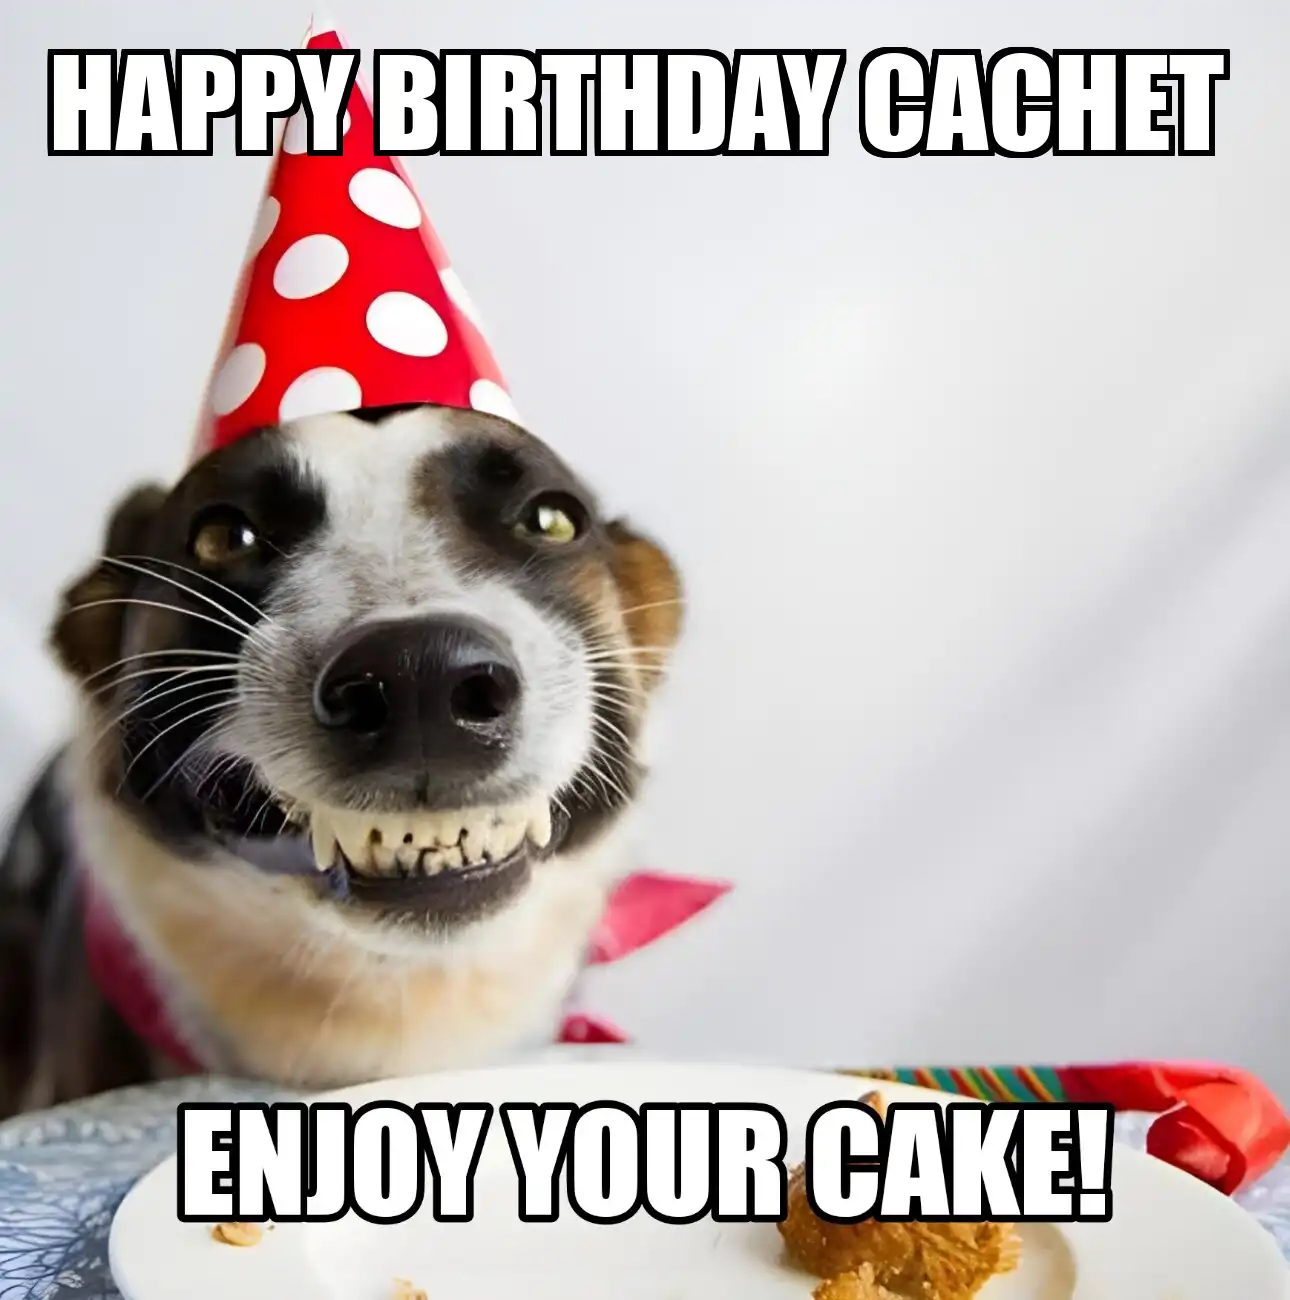 Happy Birthday Cachet Enjoy Your Cake Dog Meme